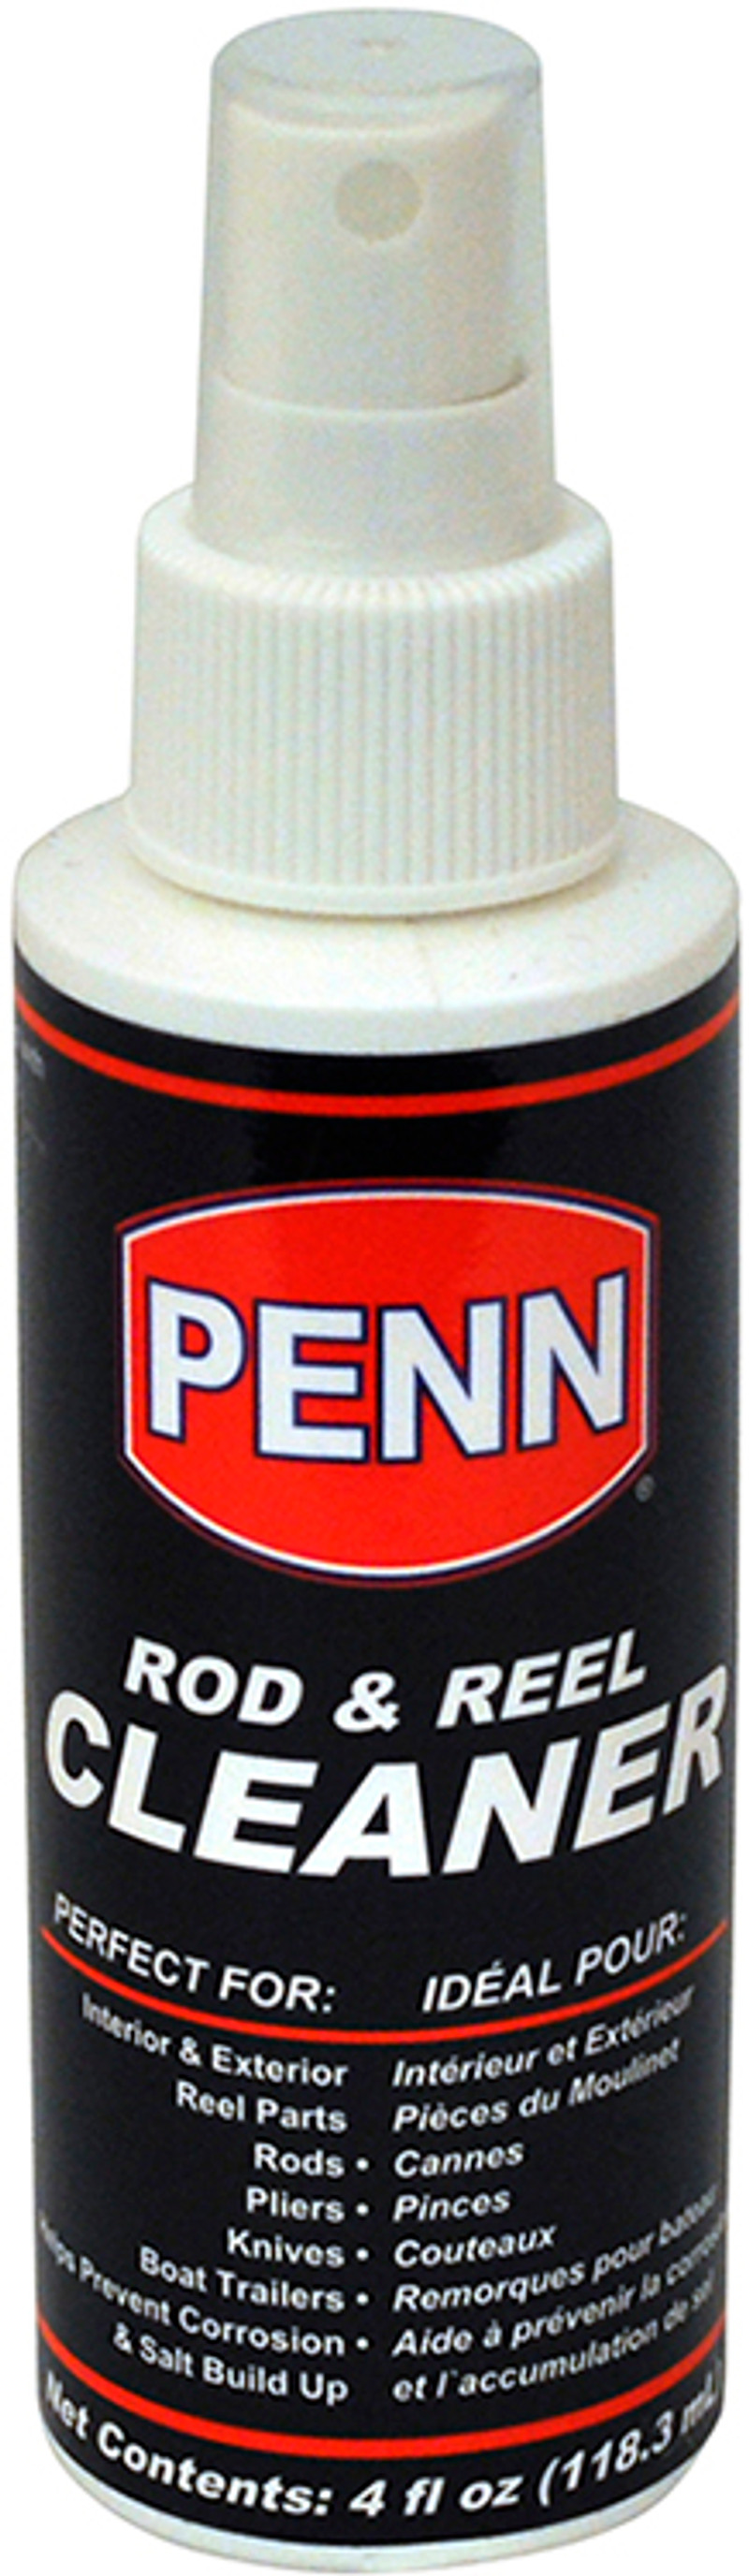 Penn Rod and Reel Cleaner - 4oz Spray Bottle